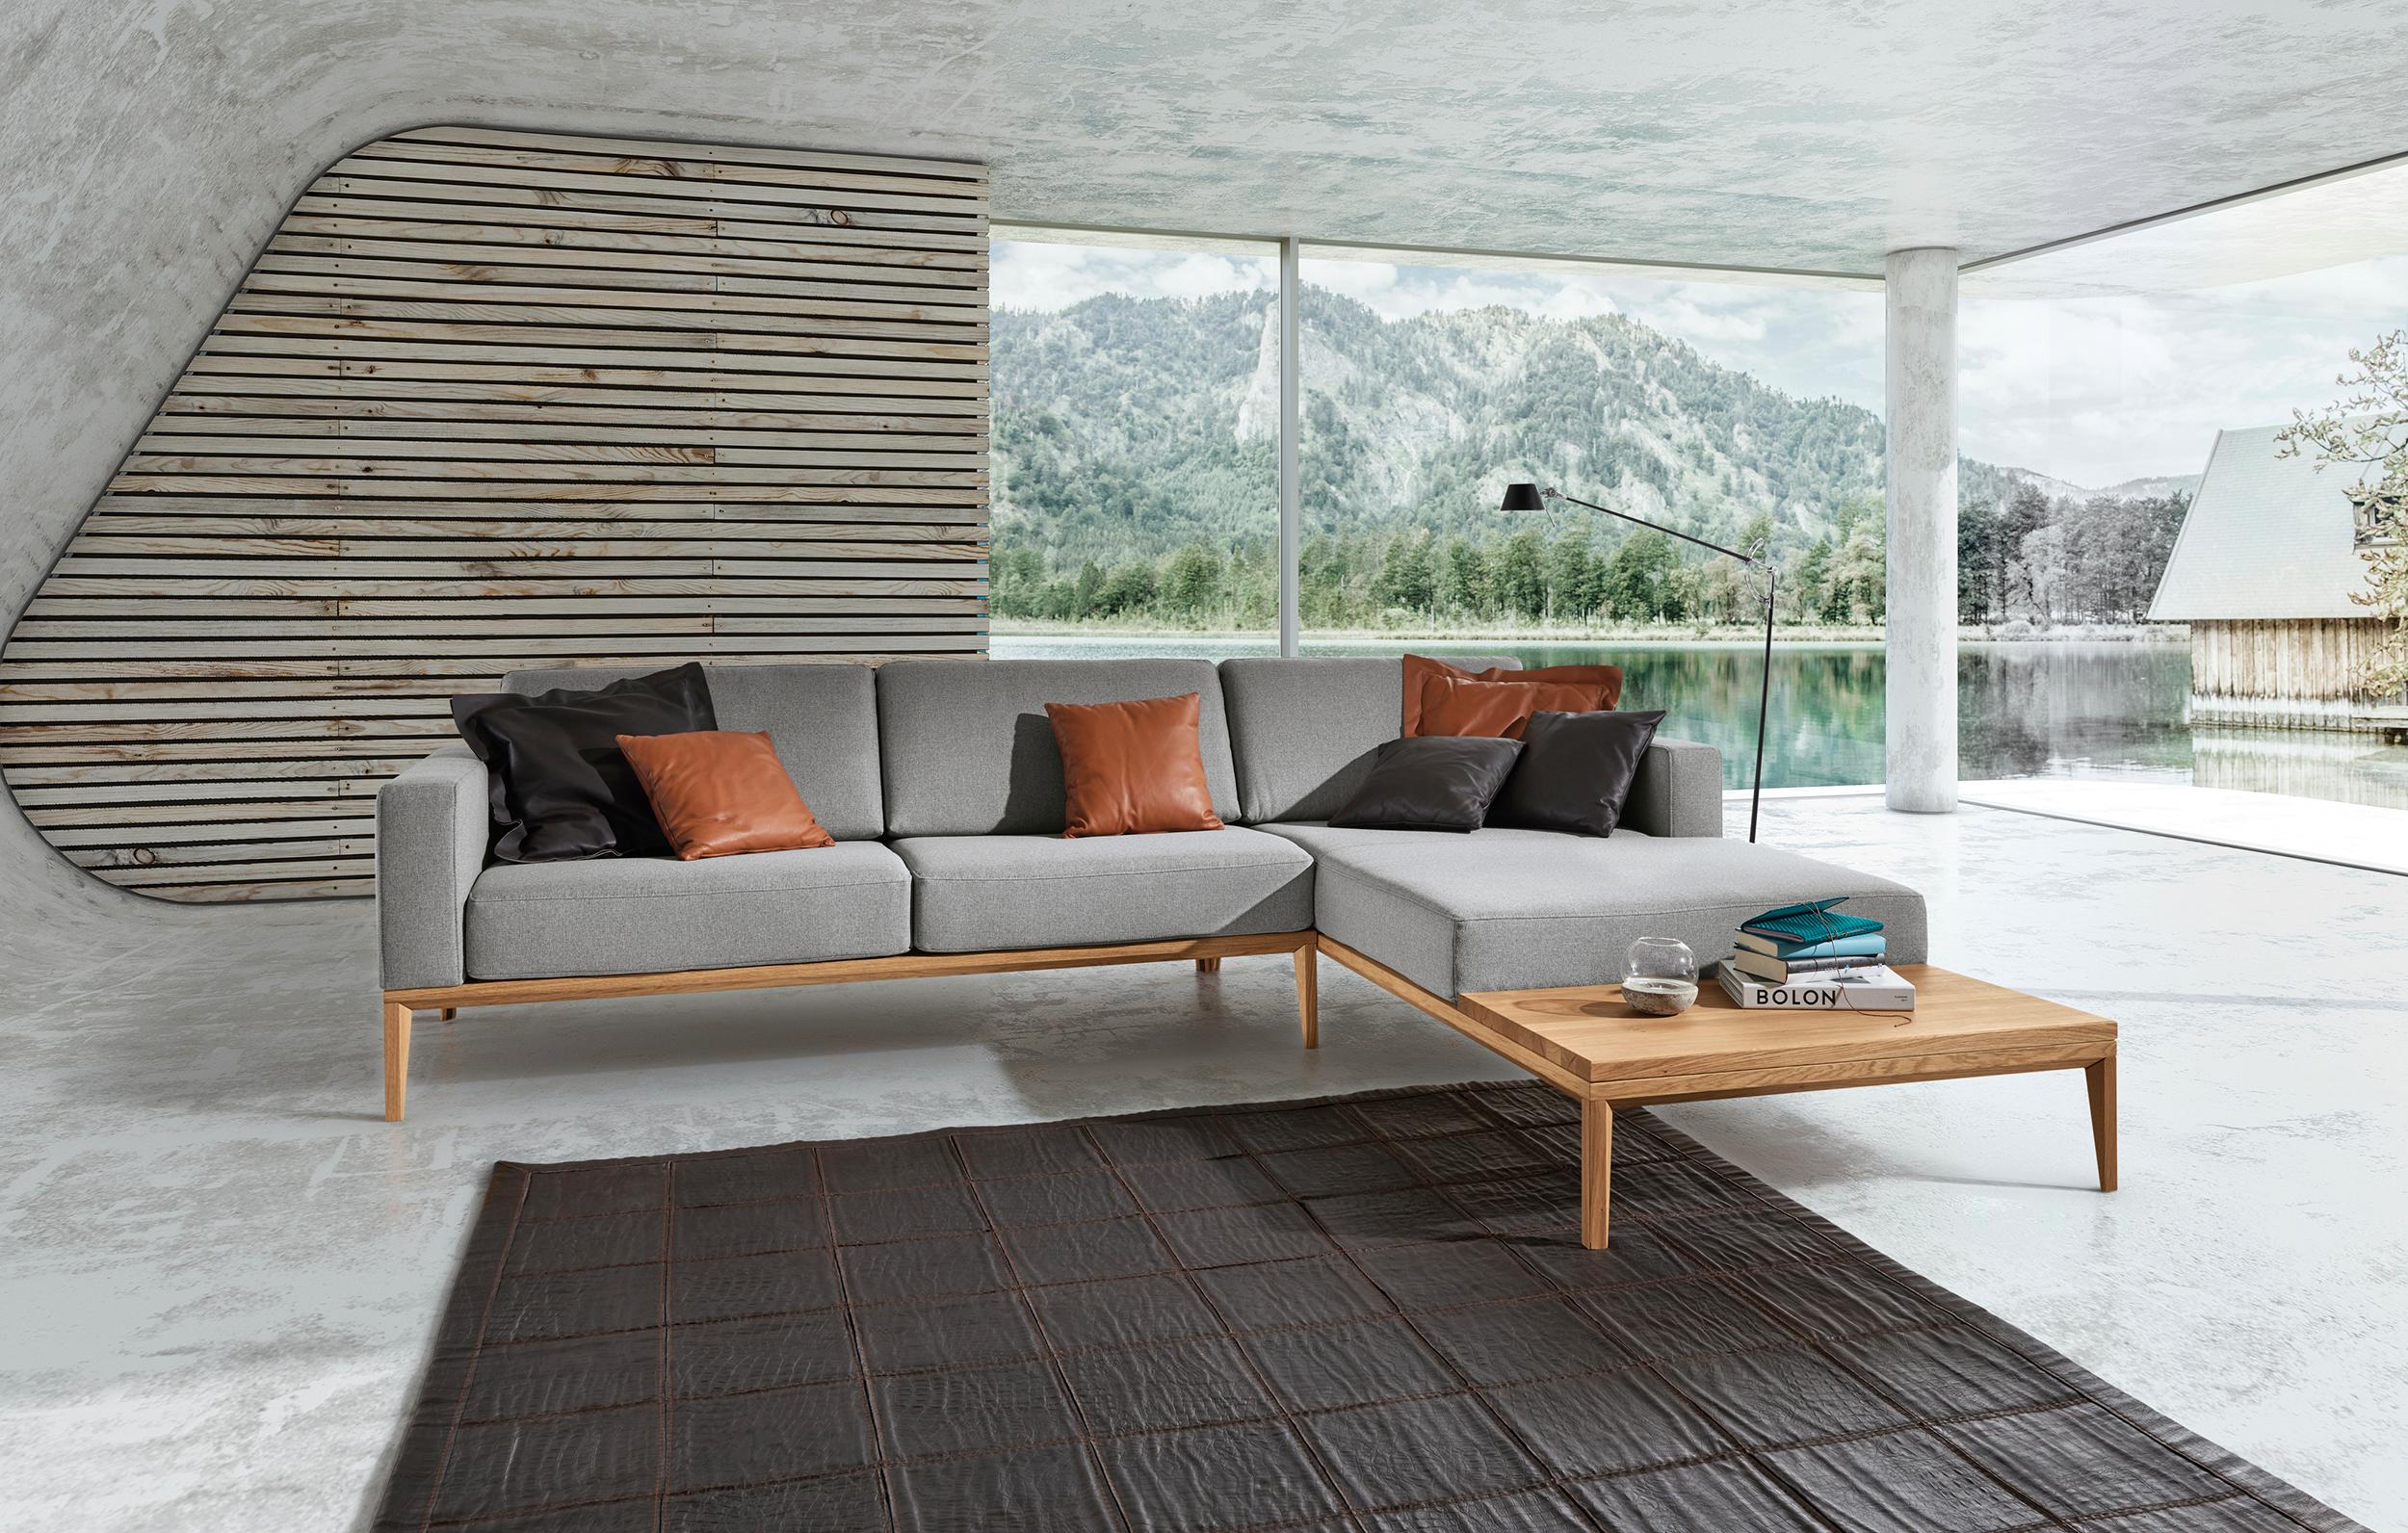 Sofa "Trentino" in Grau von ADA #teppich #ecksofa #sofakissen #grauessofa #holzsofa #wohnzimmergestaltung #hölzernewandgestaltung #panoramafenster ©ADA